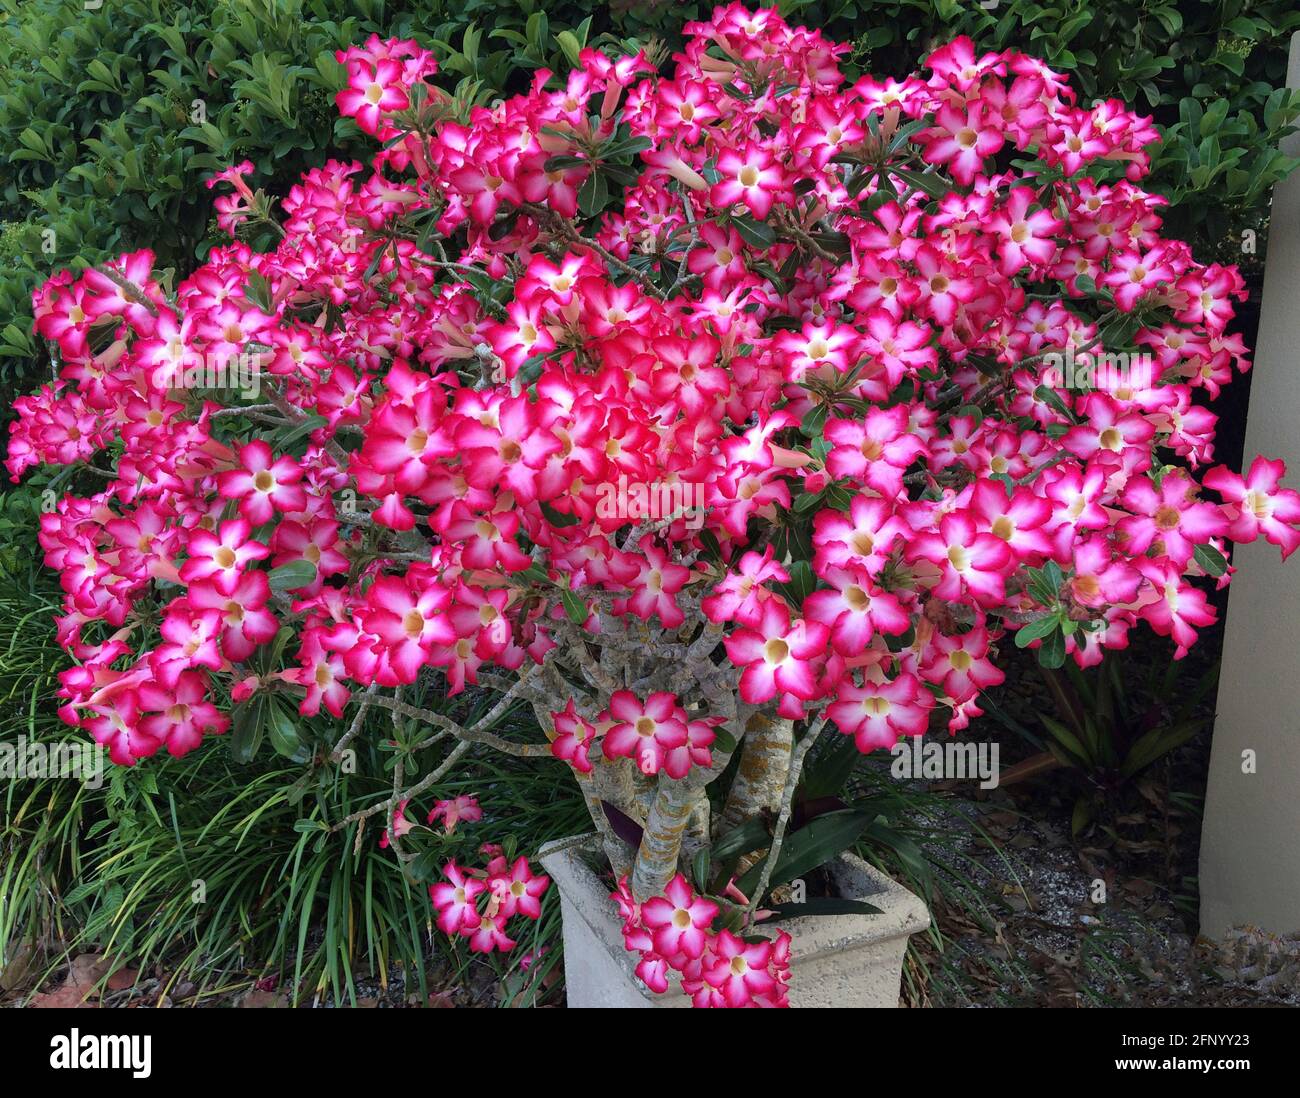 Desert Rose è un nome comune per Adenium obesum, una pianta succulente fiorente che è anche chiamato stella Sabi, mock azalea o impala giglio. Un nativo dell'Africa, è una pianta ornamentale all'aperto popolare in climi più caldi dove il sole è abbondante, come in Florida, Stati Uniti, dove questo arbusto di 10 anni sta crescendo in un piccolo contenitore. Il rosa intenso e il rosso sono i colori dominanti dei bellissimi fiori a forma di campana a 5 petali della pianta. Si noti che linfa lattiginosa da piante di rosa del deserto è tossico e considerato velenoso per gli esseri umani e gli animali. Foto Stock